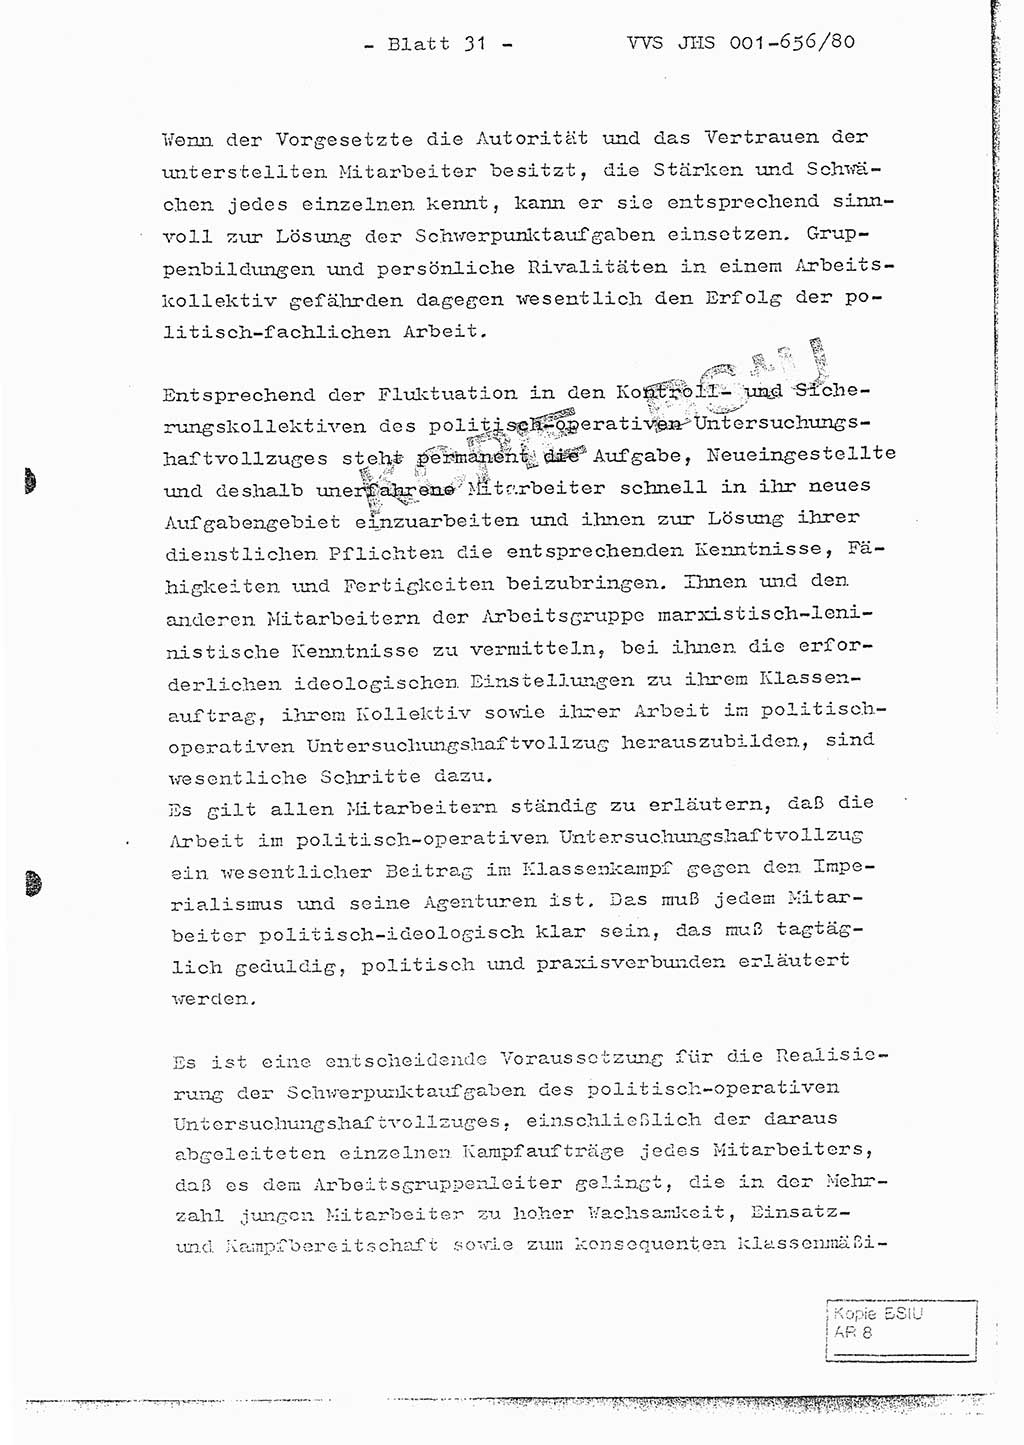 Fachschulabschlußarbeit Unterleutnant Christian Kätzel (Abt. ⅩⅣ), Ministerium für Staatssicherheit (MfS) [Deutsche Demokratische Republik (DDR)], Juristische Hochschule (JHS), Vertrauliche Verschlußsache (VVS) 001-656/80, Potsdam 1980, Blatt 31 (FS-Abschl.-Arb. MfS DDR JHS VVS 001-656/80 1980, Bl. 31)